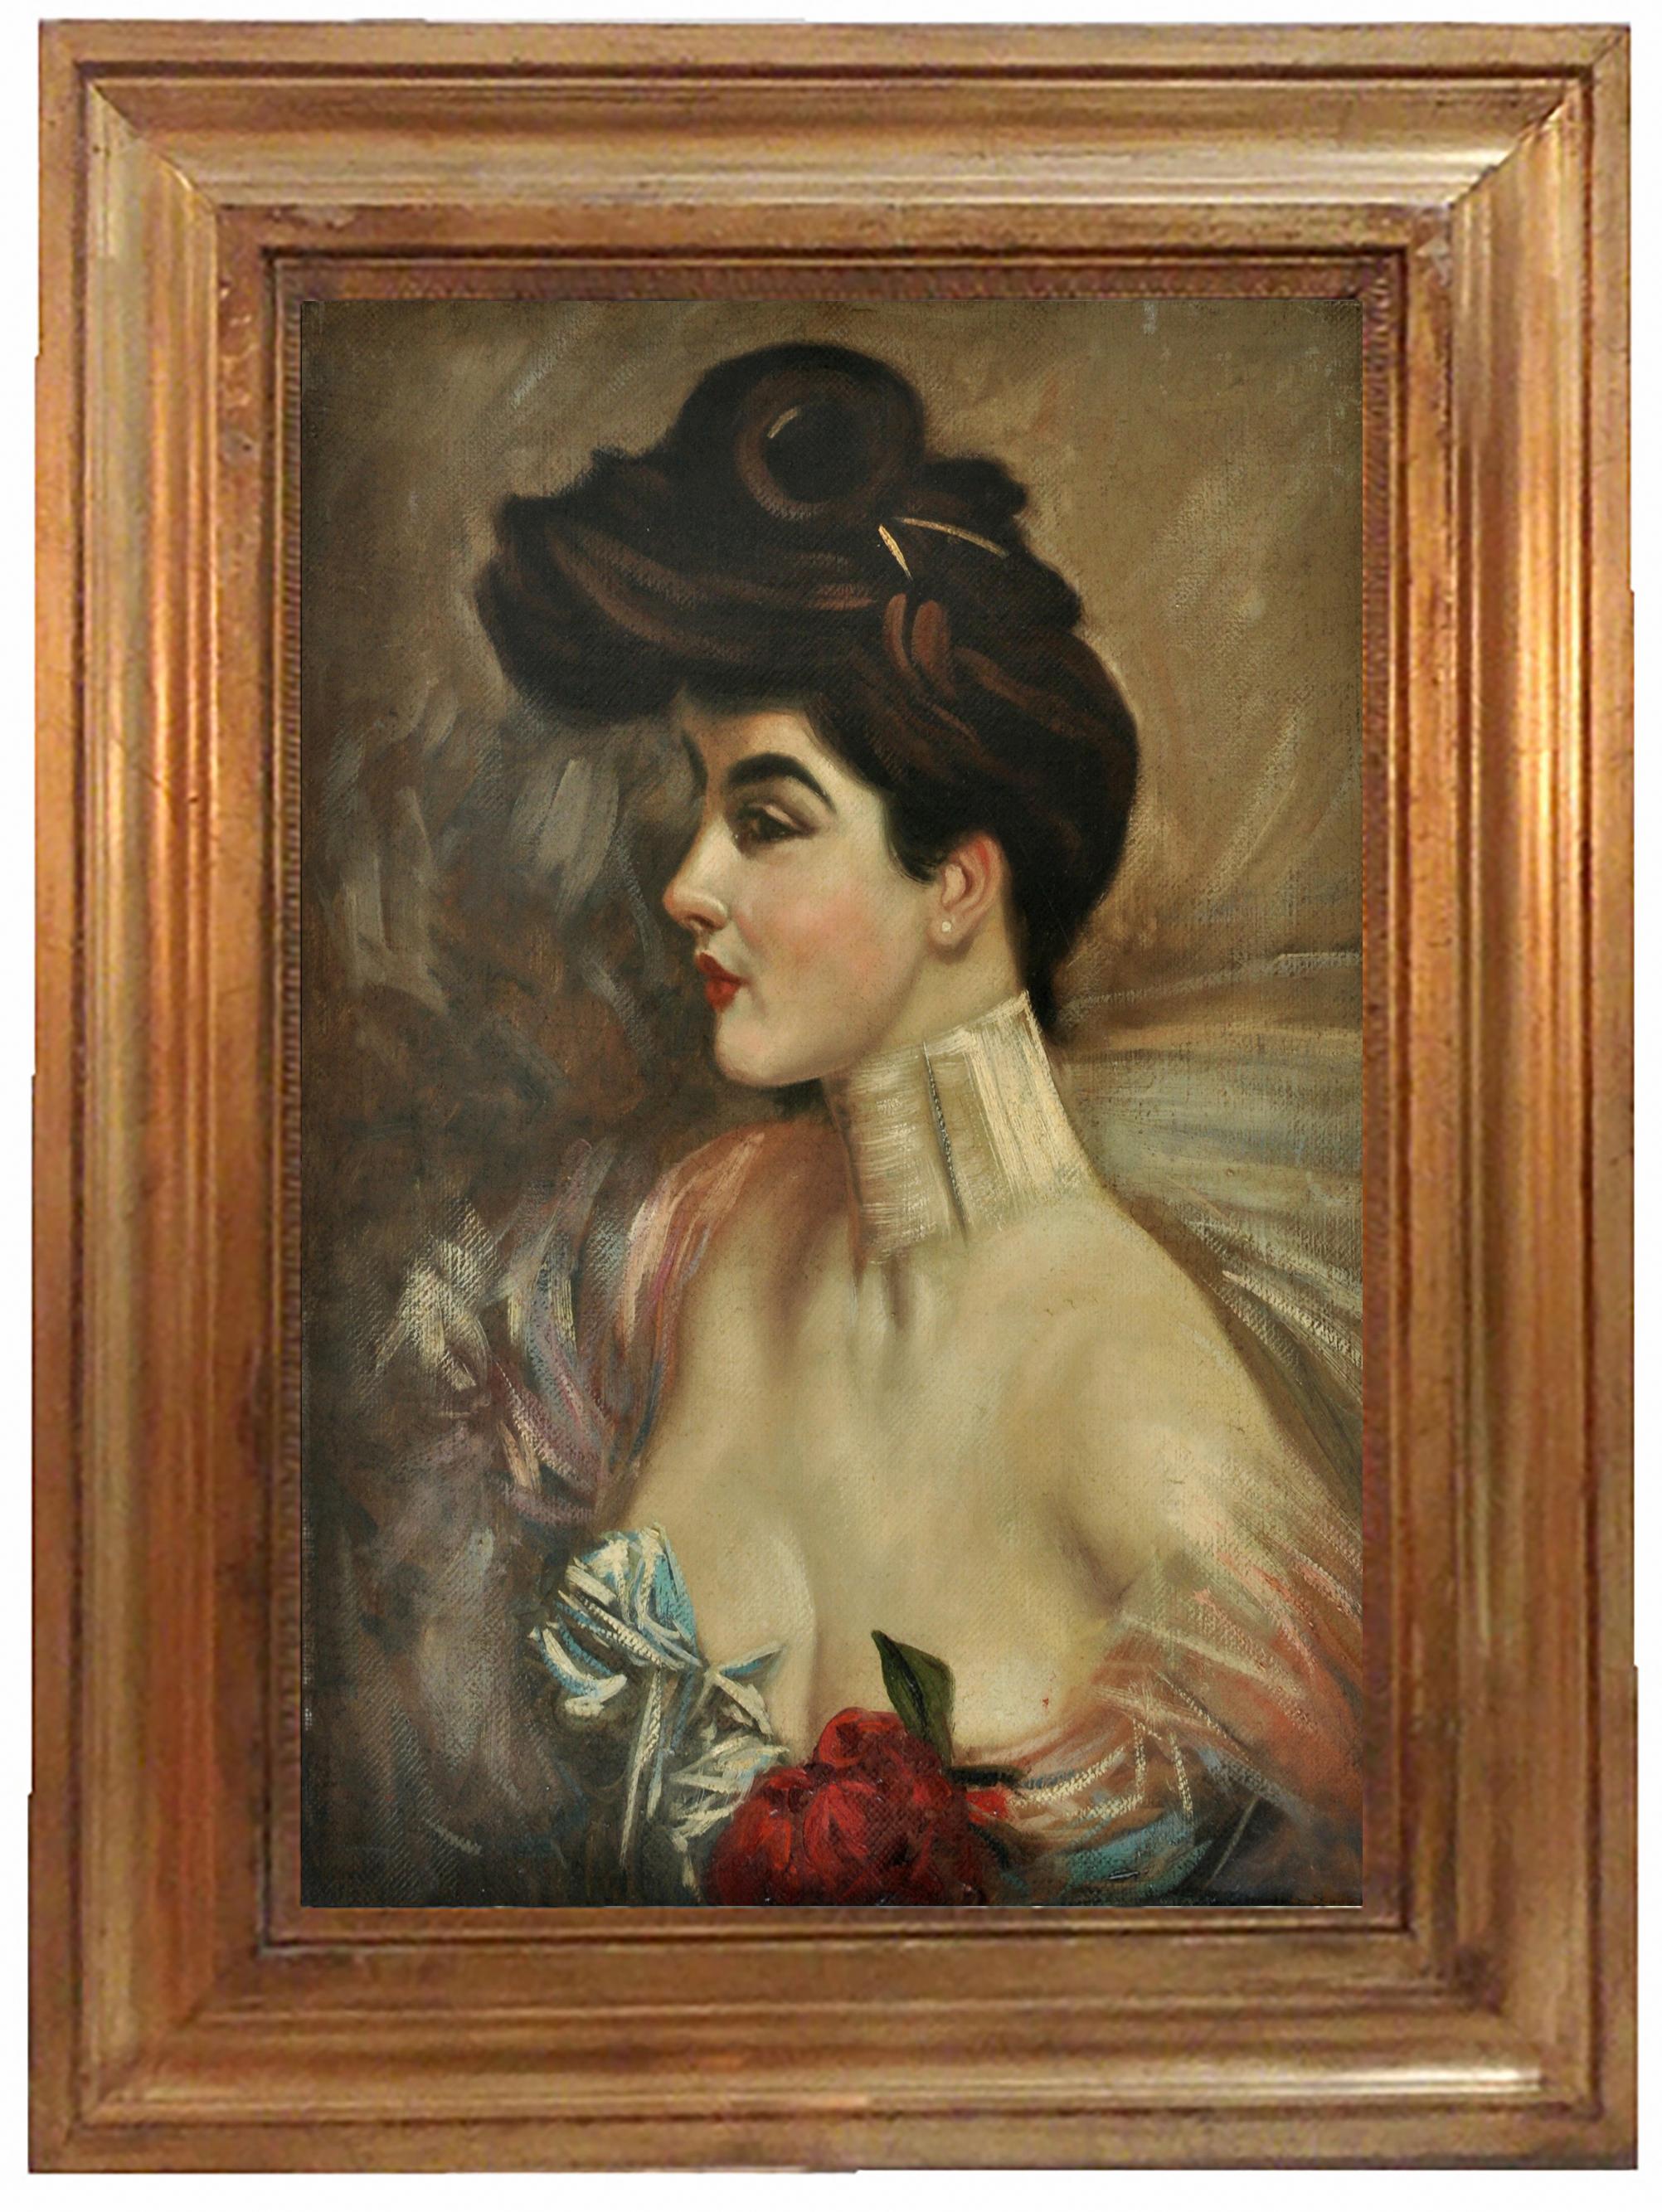 LADY'S PORTRAIT – In der Art von G. Boldini – Italienisches Gemälde, Öl auf Leinwand